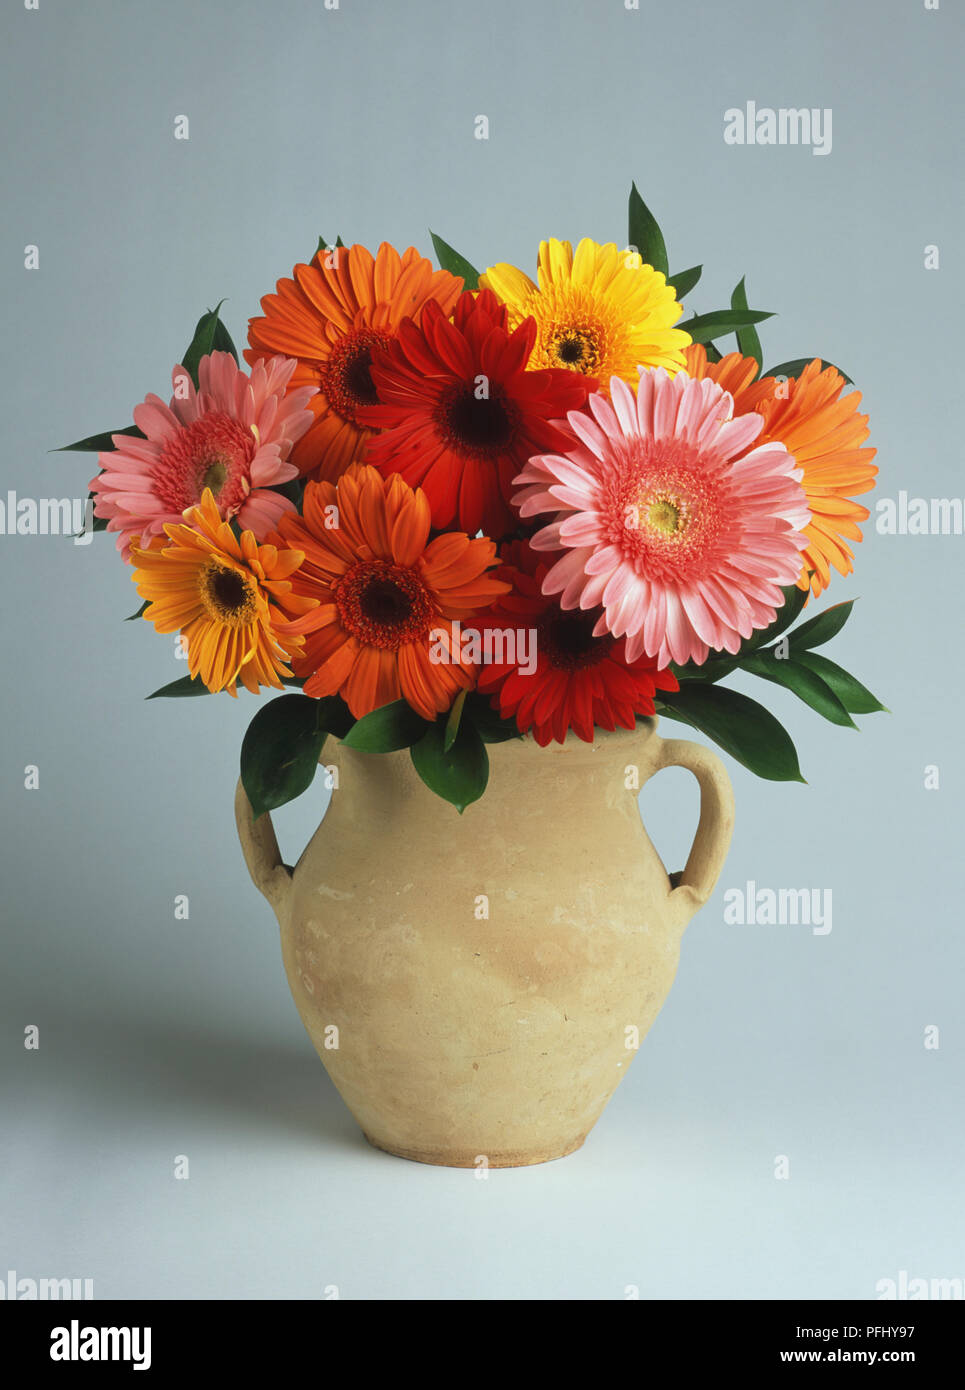 Gerbera sp., naranja, rojo, amarillo y rosa flores en vasija de barro. Foto de stock